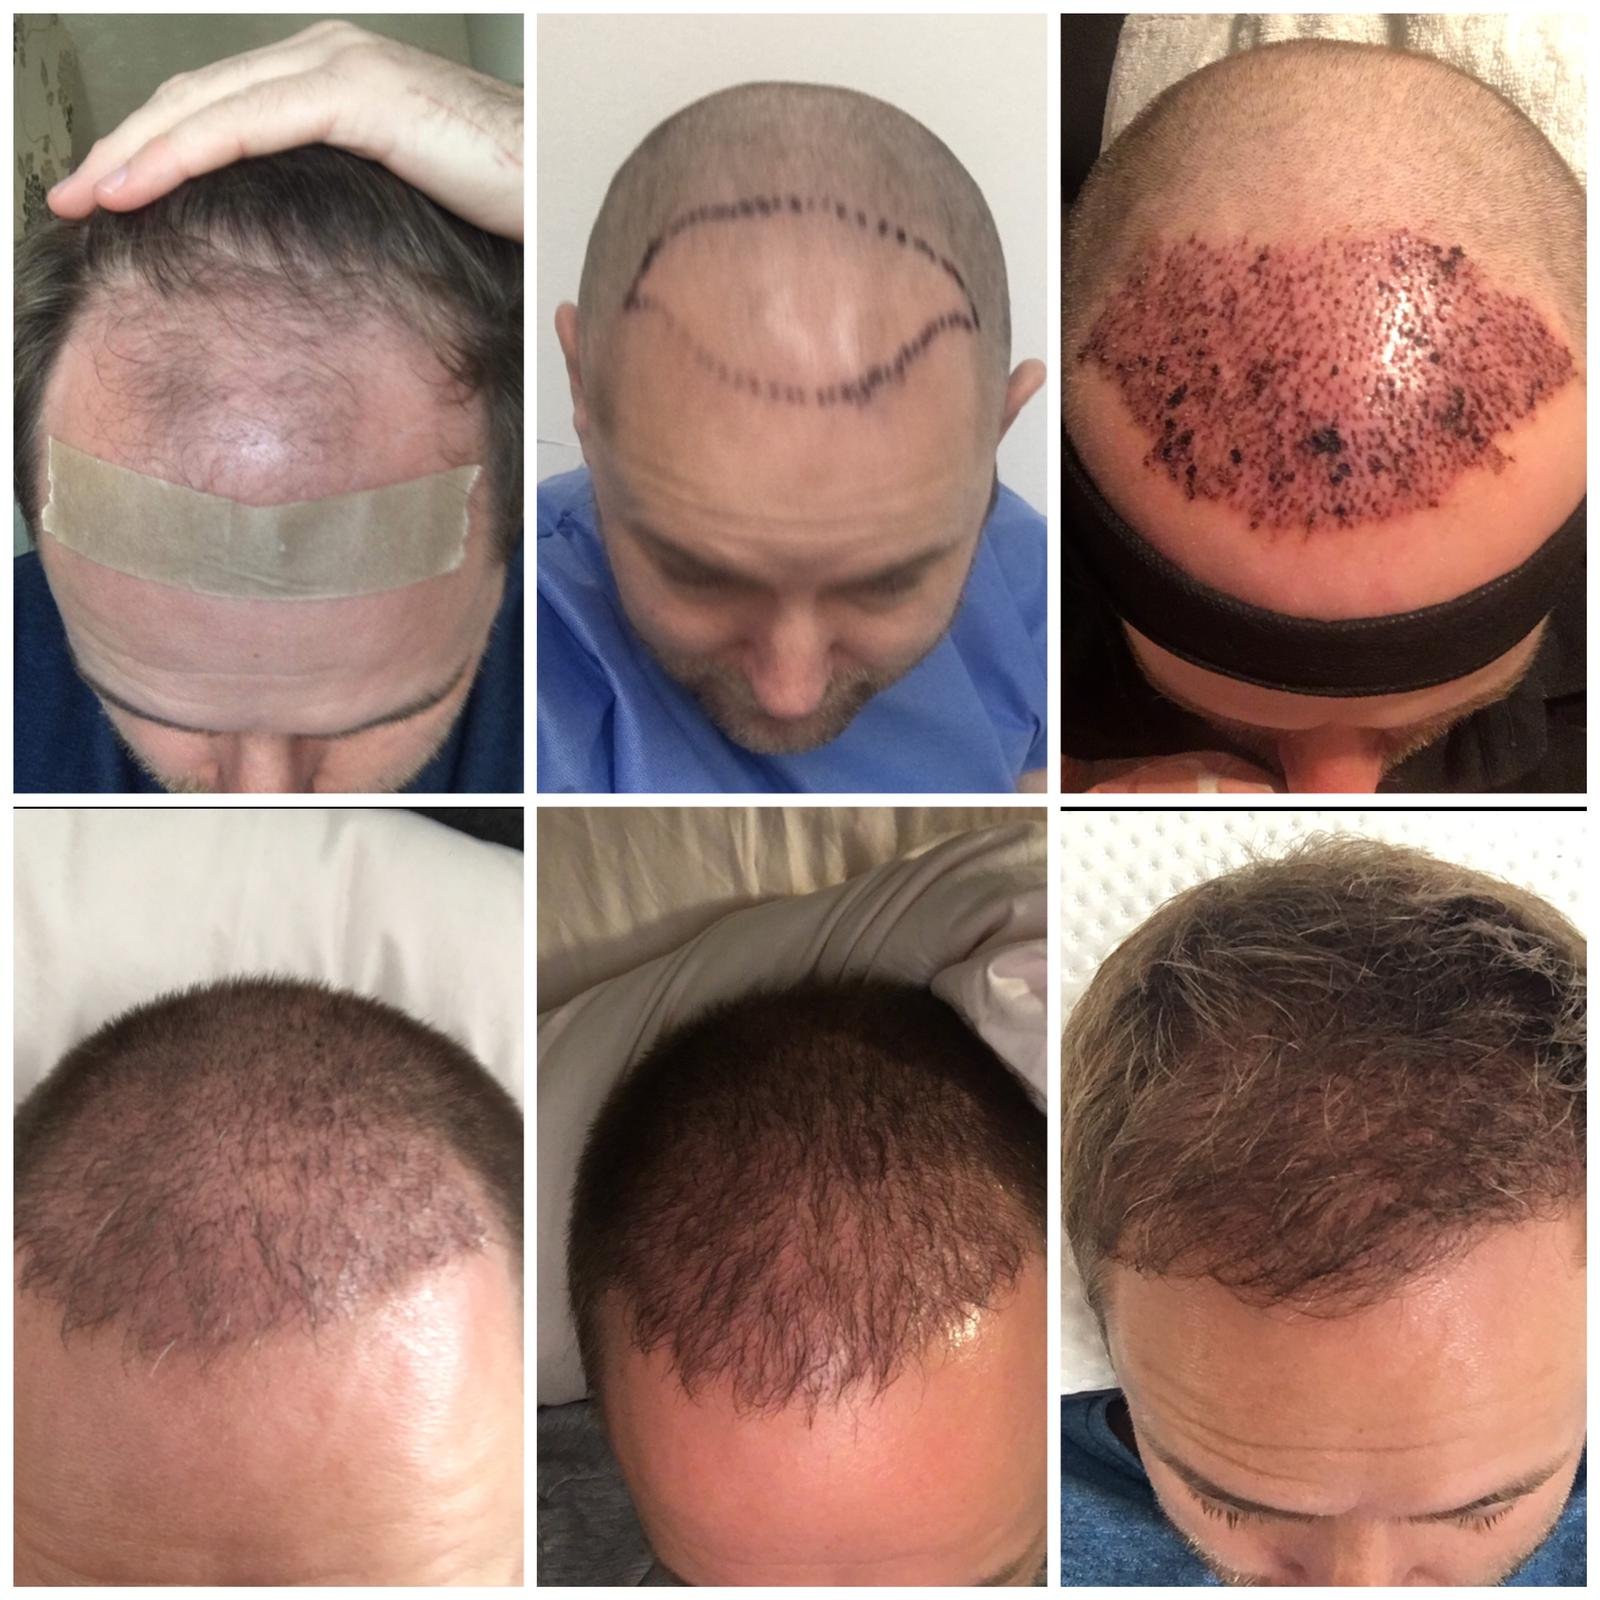 Un-Shaven Hair Transplant Technique | Hair Growth Centre